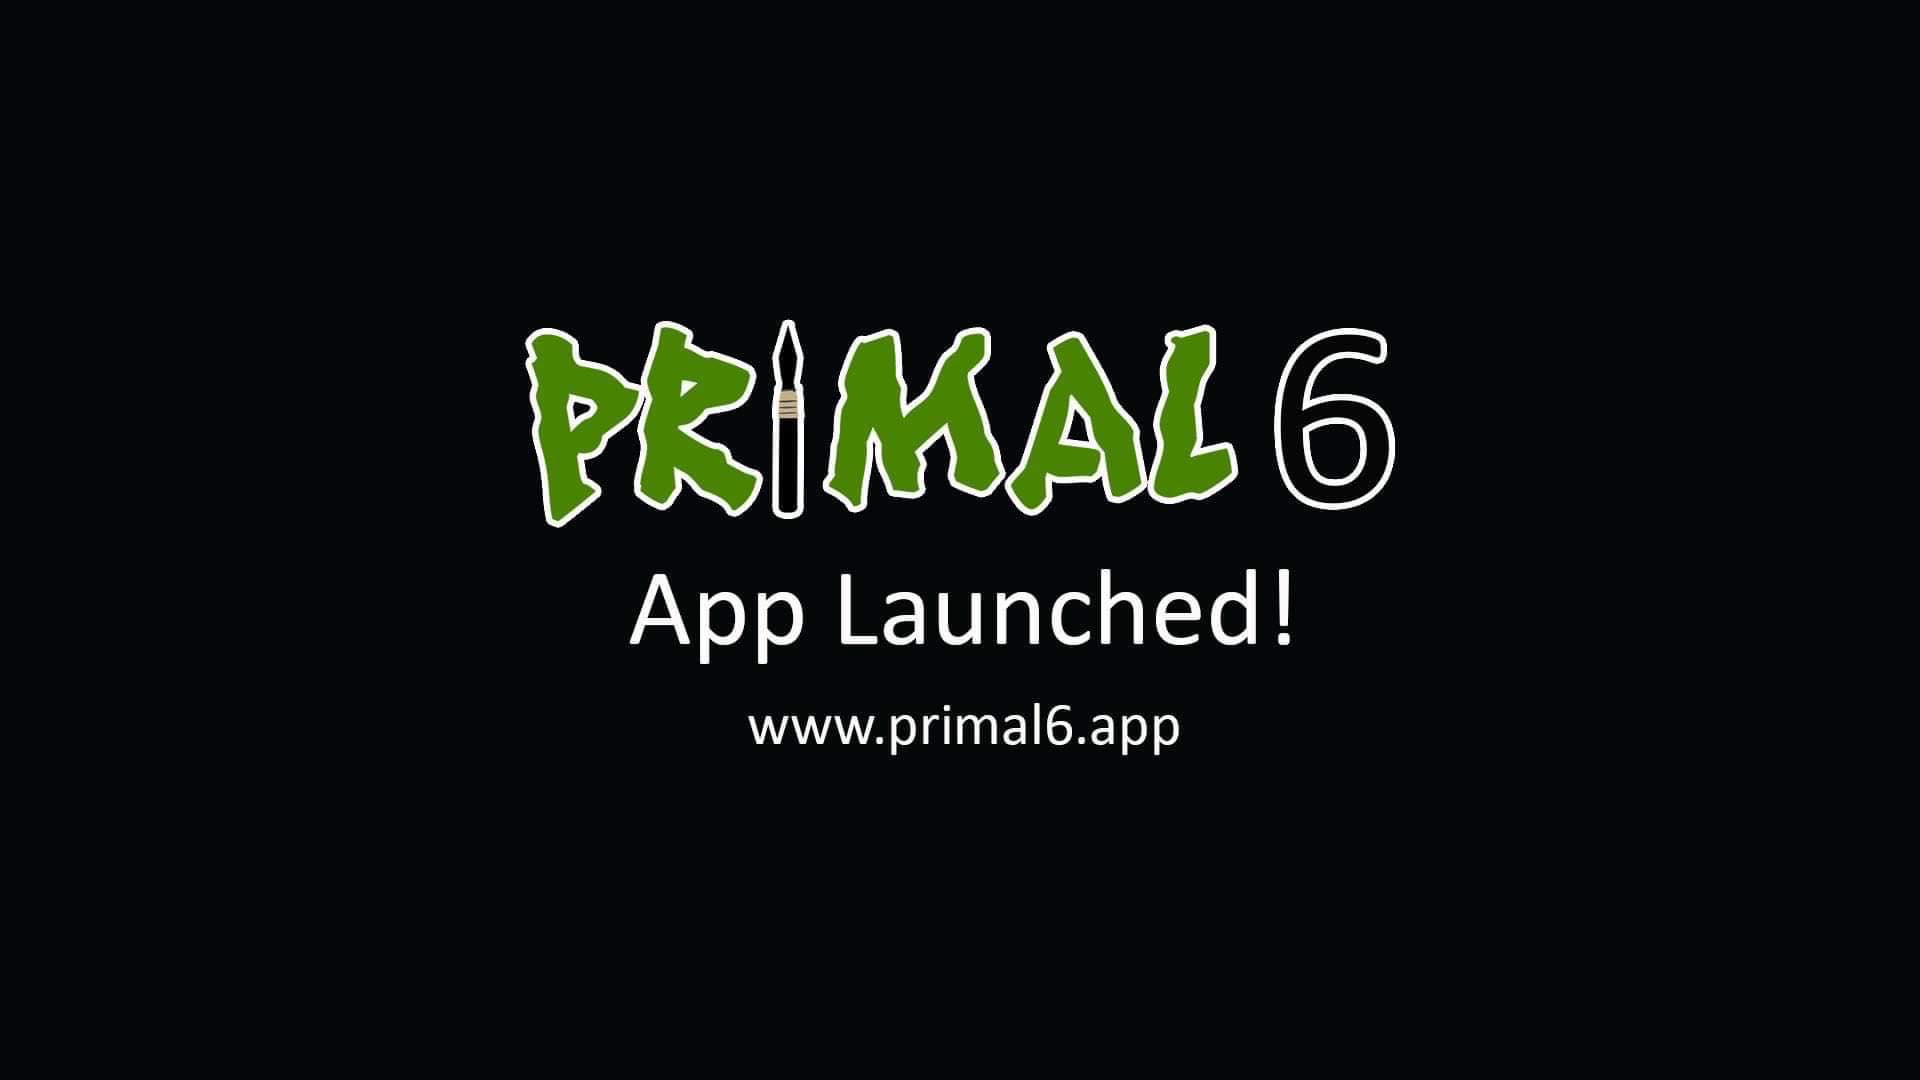 Primal 6 App Launch